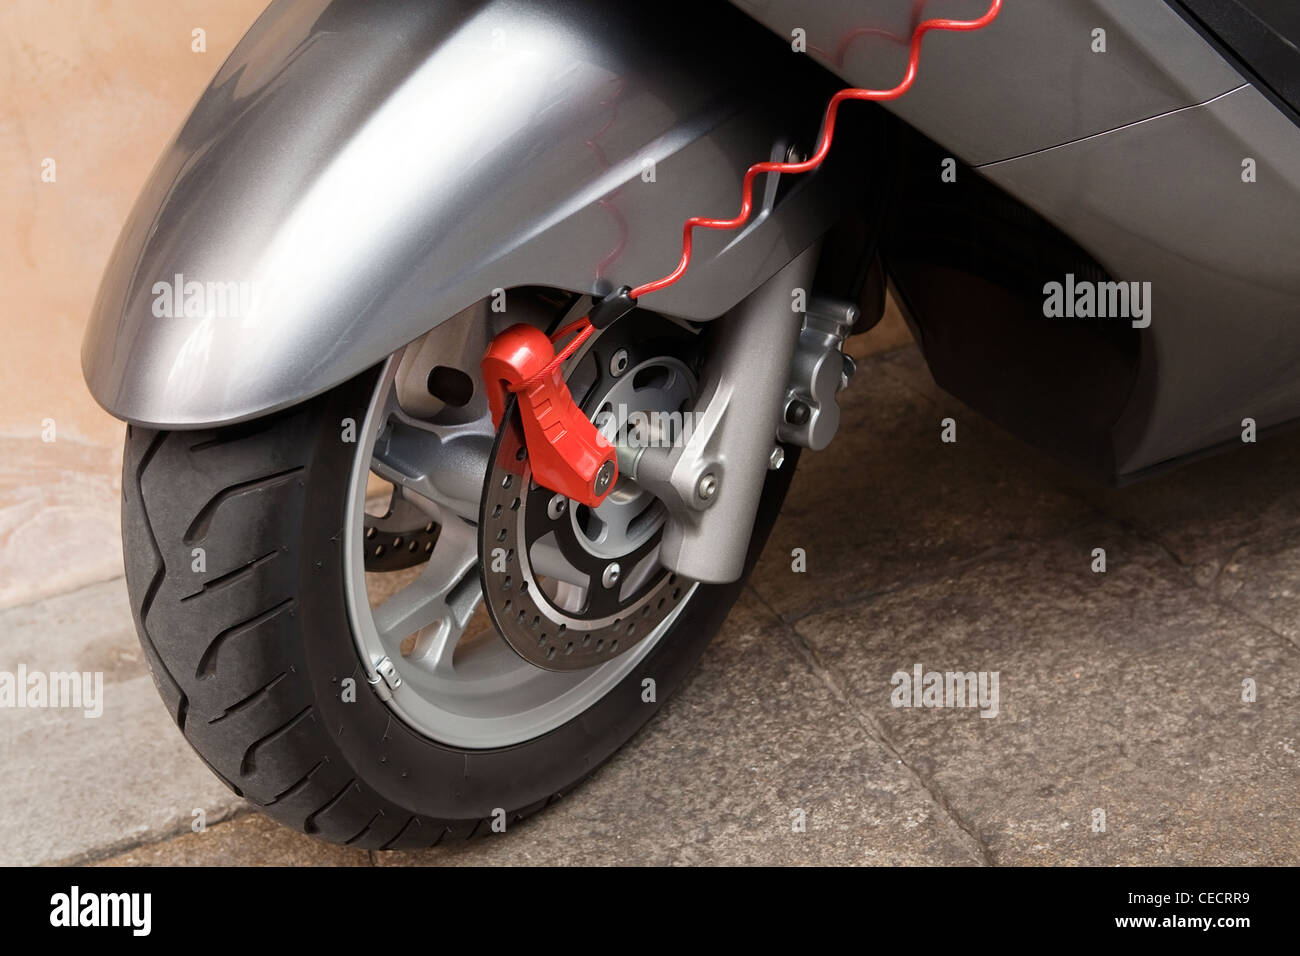 Verrou de sécurité moderne rouge garée sur roue moto Banque D'Images